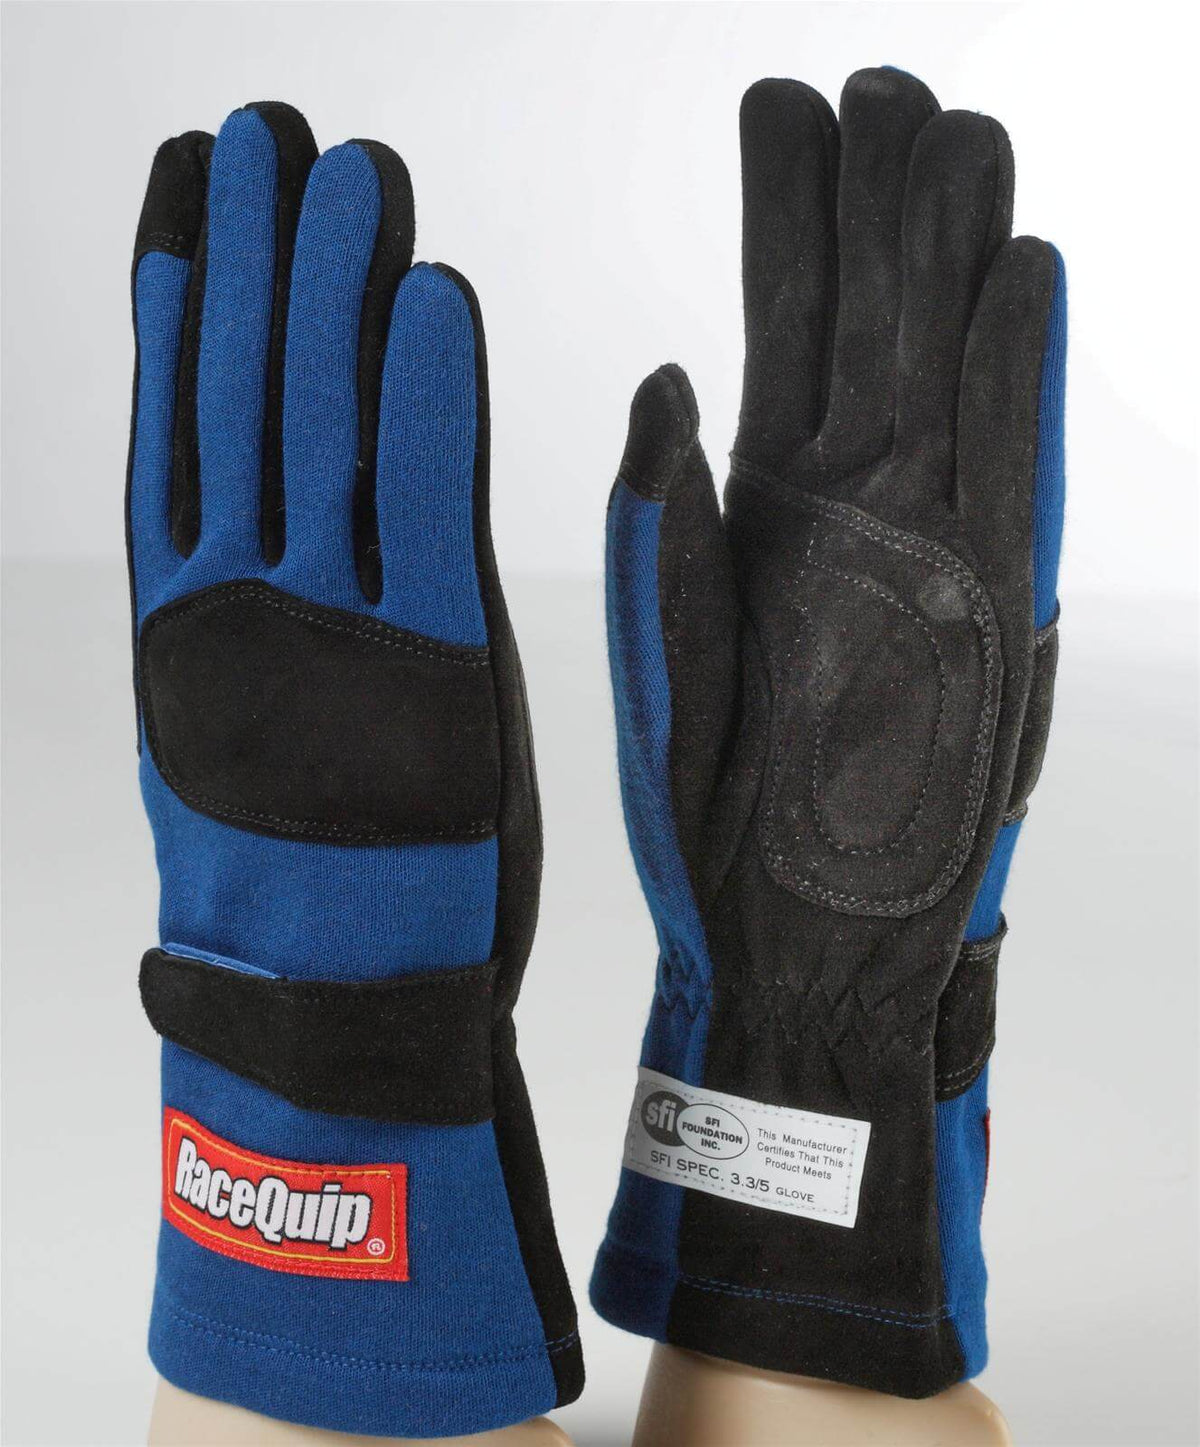 355 Gloves - $59.95